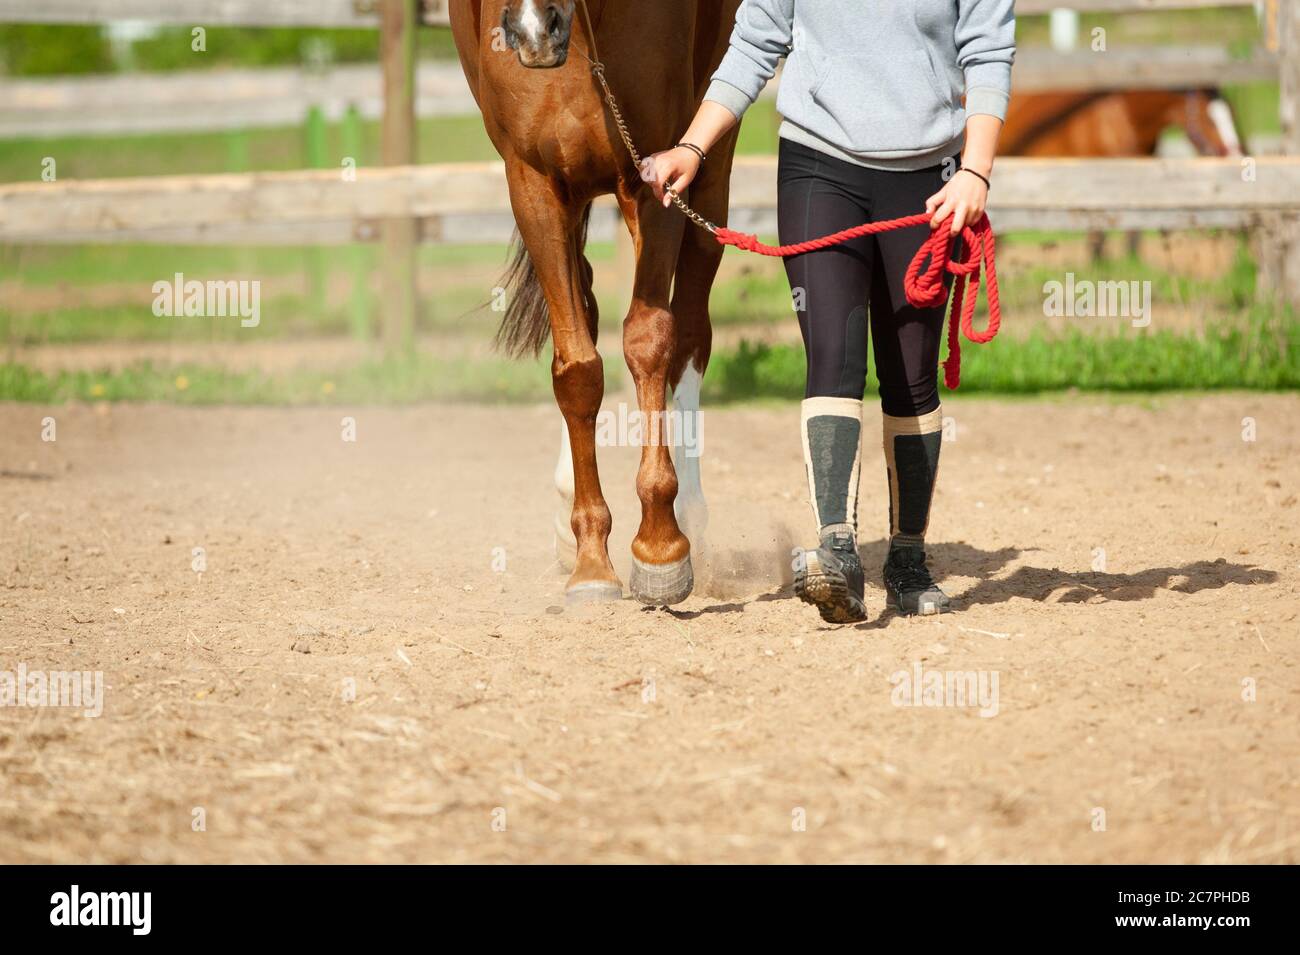 Concetto: Cavallo con umano. Lezione di addestramento di ragazza e cavallo in maneggio. Zoccoli di un cavallo e gambe di un cavaliere. Equitazione - umana e cavallo che camminano insieme Foto Stock